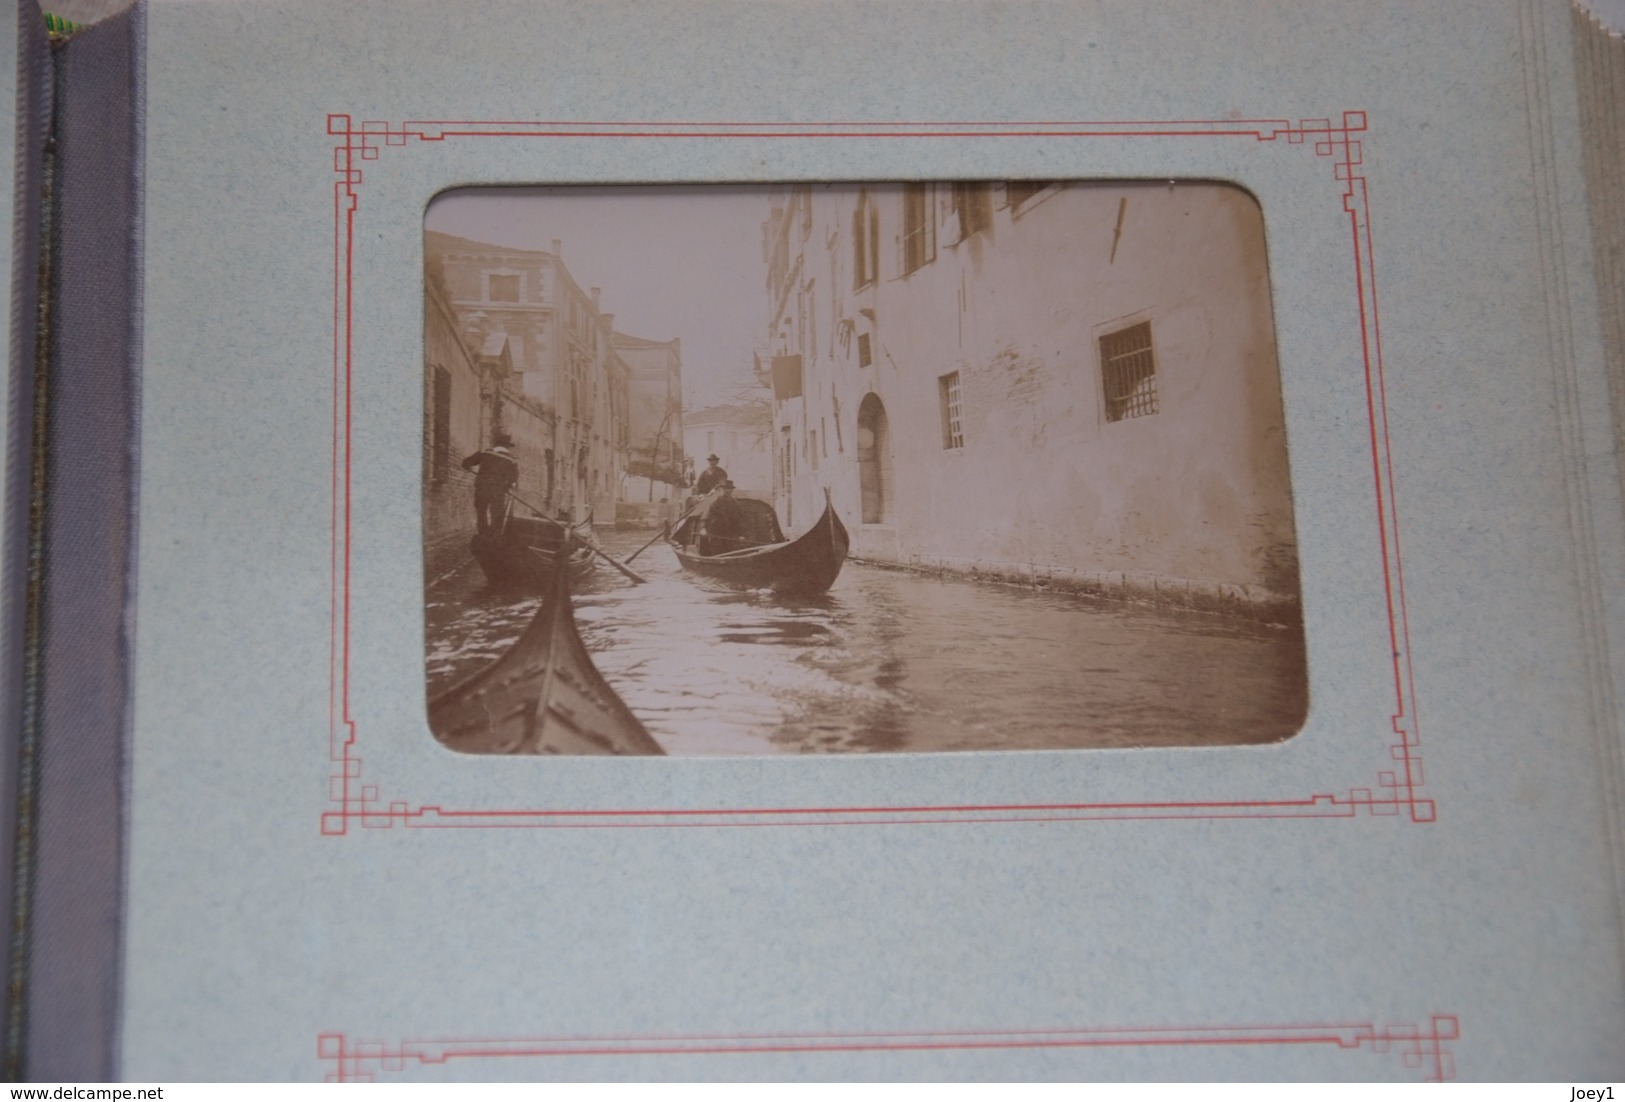 Magnifique album photo 1900,Nice,Monte Carlo,Florence,Turin,Naples,Venise,Pise,Padoue, avec vues animées